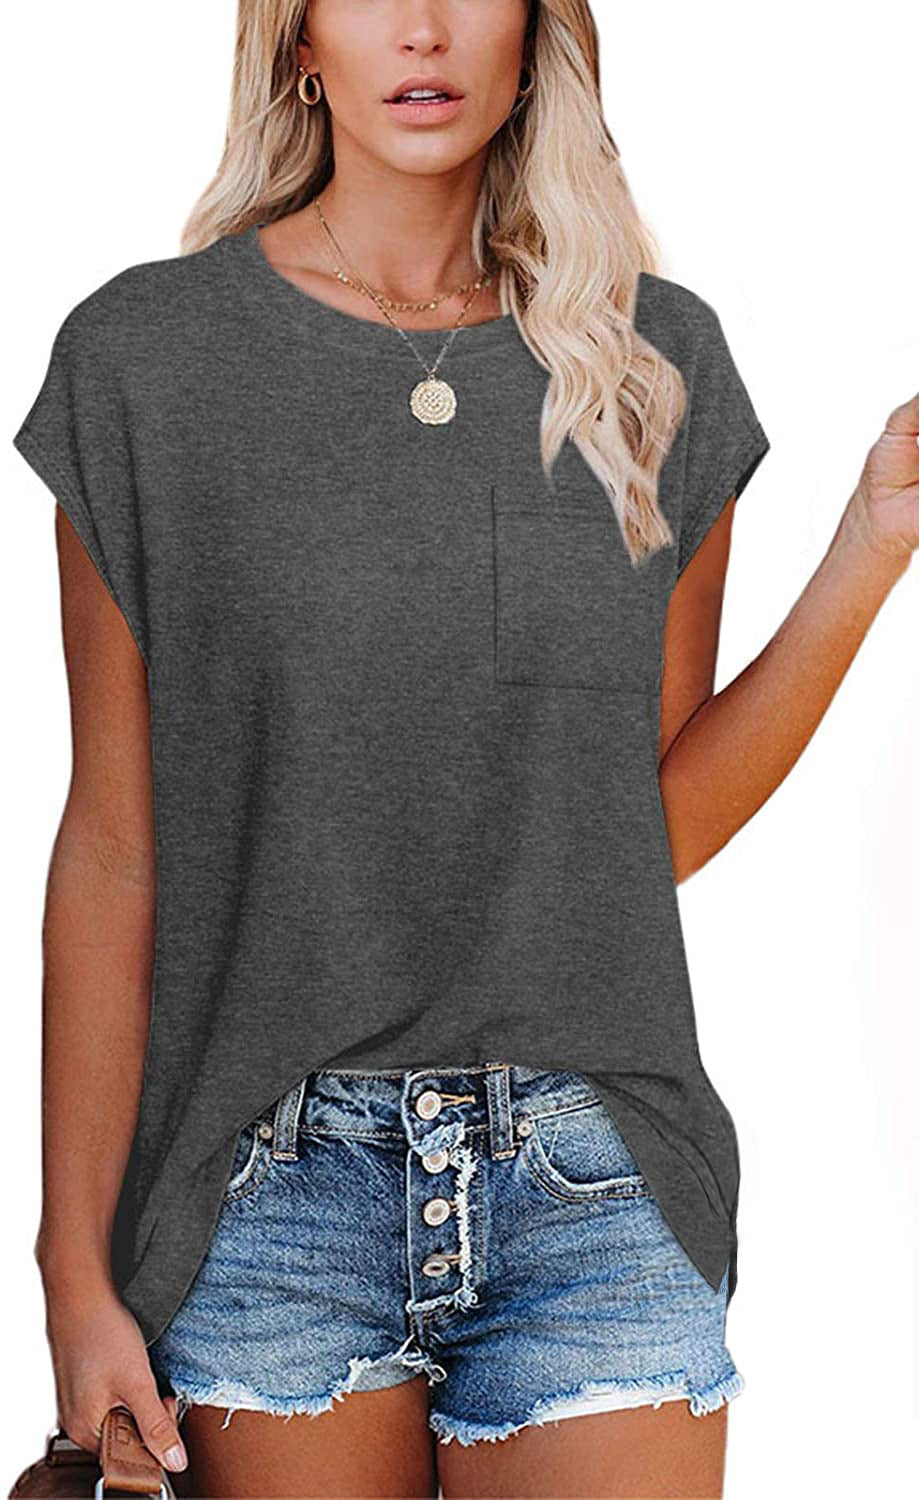 Women's Solid Color Round Leisure Neck Pocket Shoulder Short-sleeved T-shirt